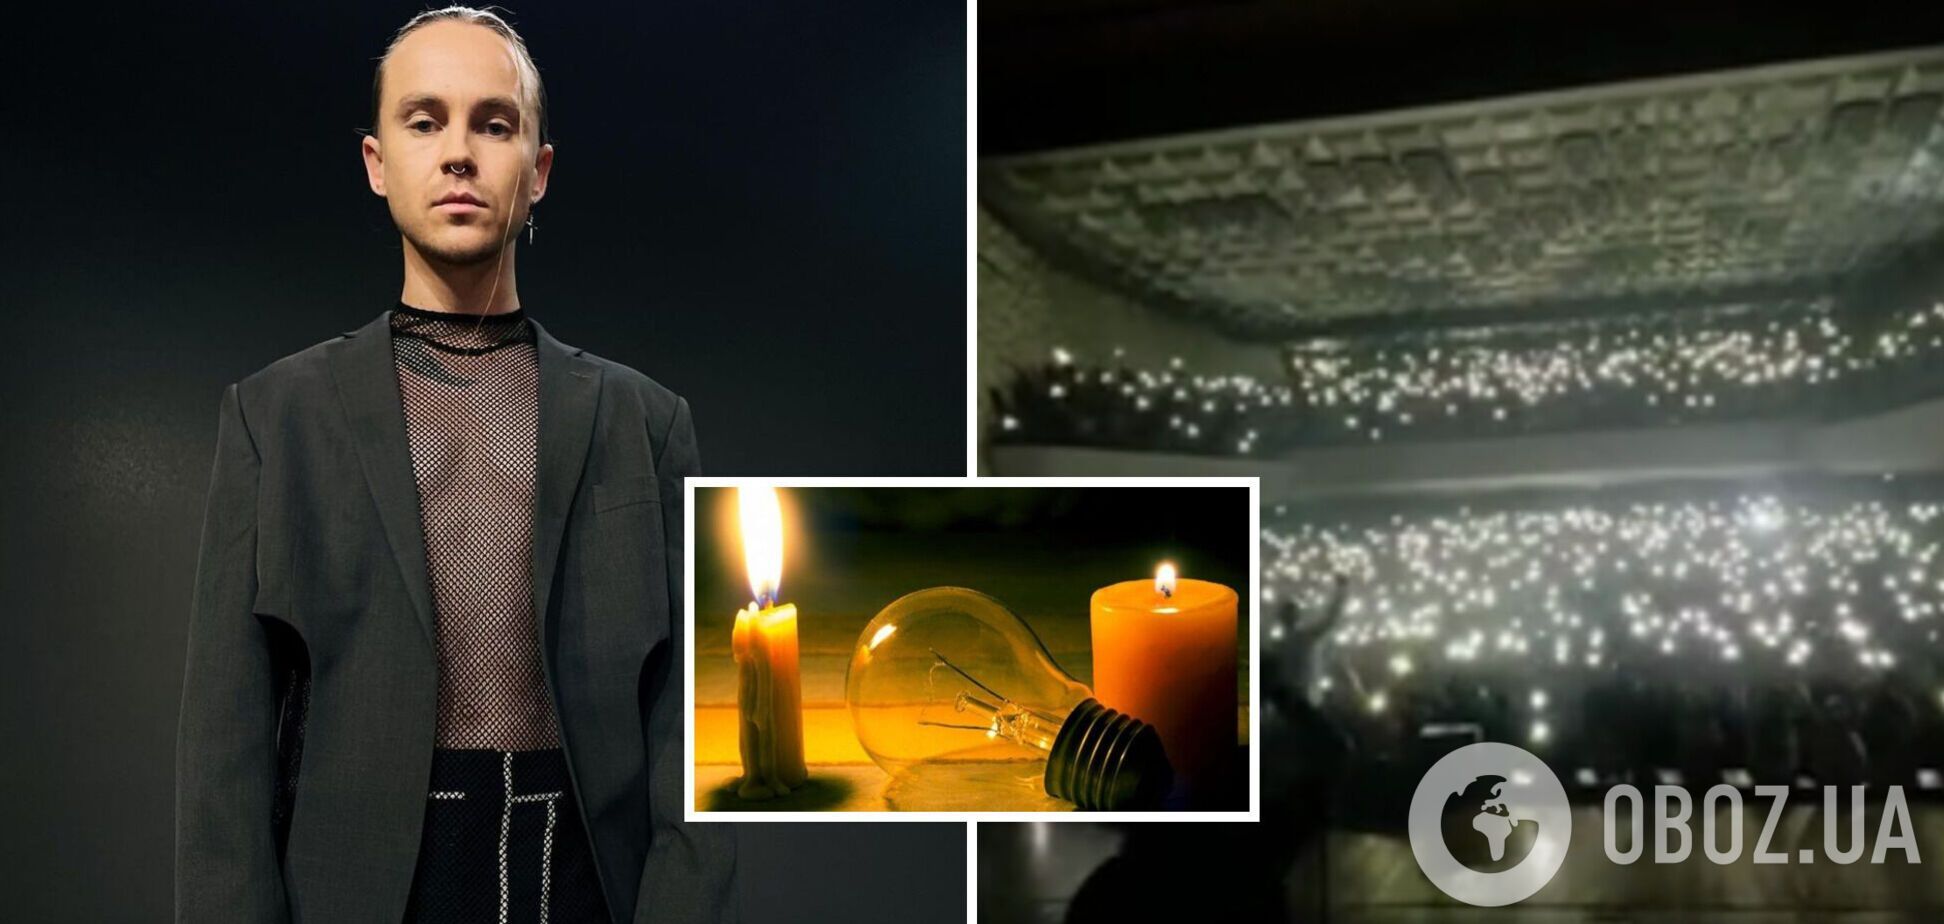 Українці на концерті Пивоварова в один голос співали 'Думи мої', коли вимкнулося світло: неймовірне відео